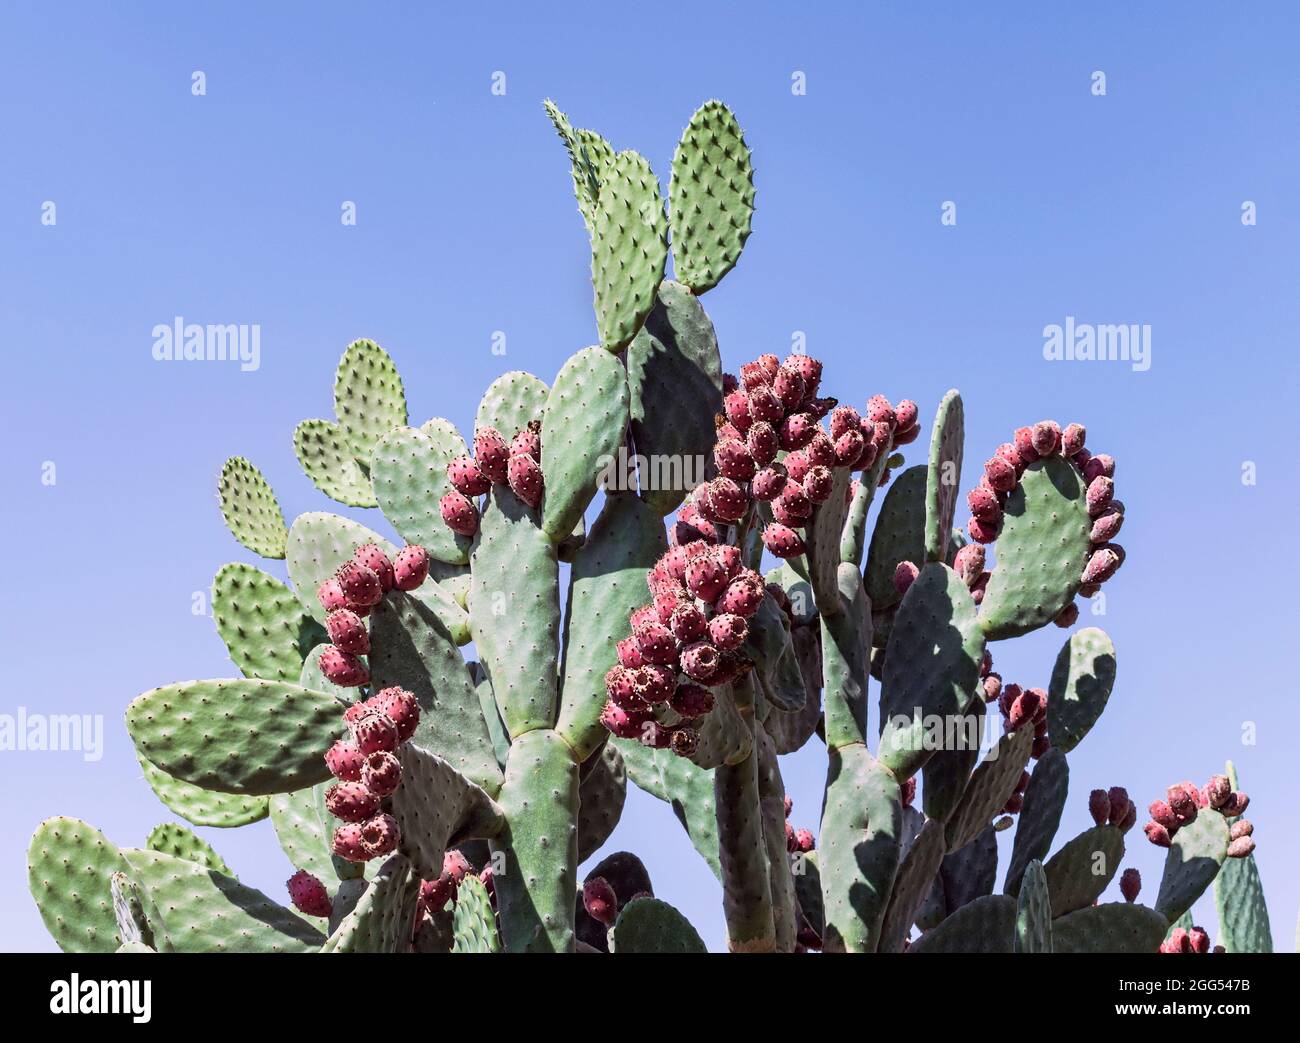 Riesiger, samtiger Kaktus aus Kaktus mit stacheligen Birnen, Opuntia tomentosa, mit vielen leuchtend roten Früchten, eingerahmt von einem klaren blauen Himmel Stockfoto